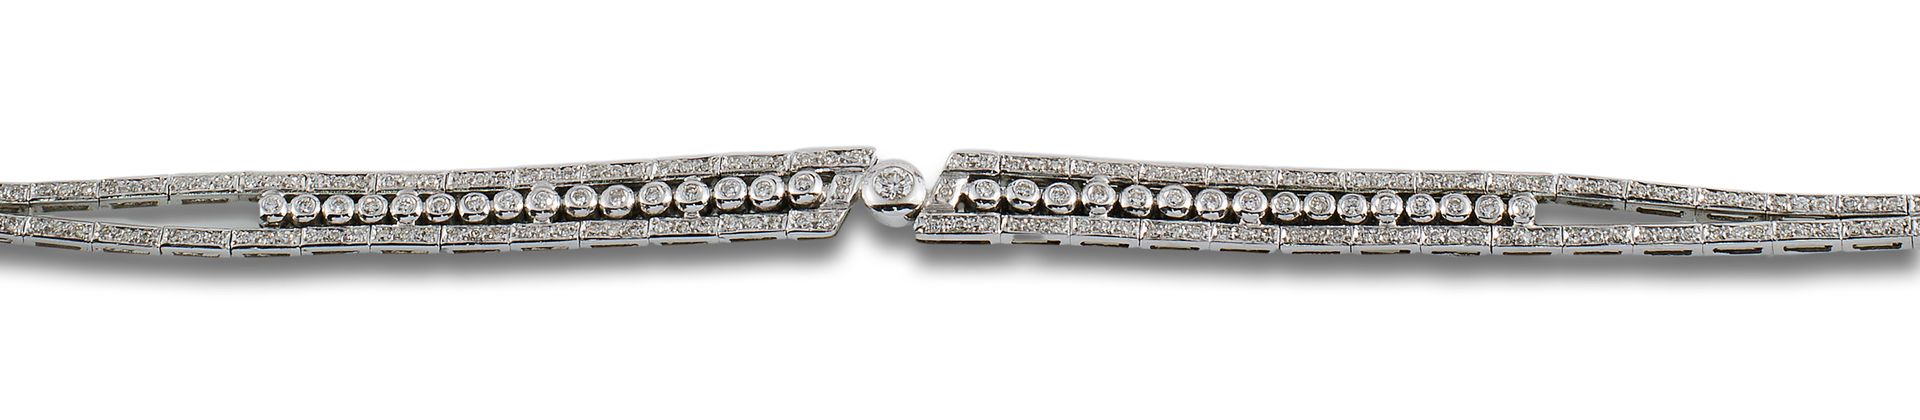 18 kt white gold bracelet. Diamond-shaped ring in 18 kt white gold, center with &hellip;